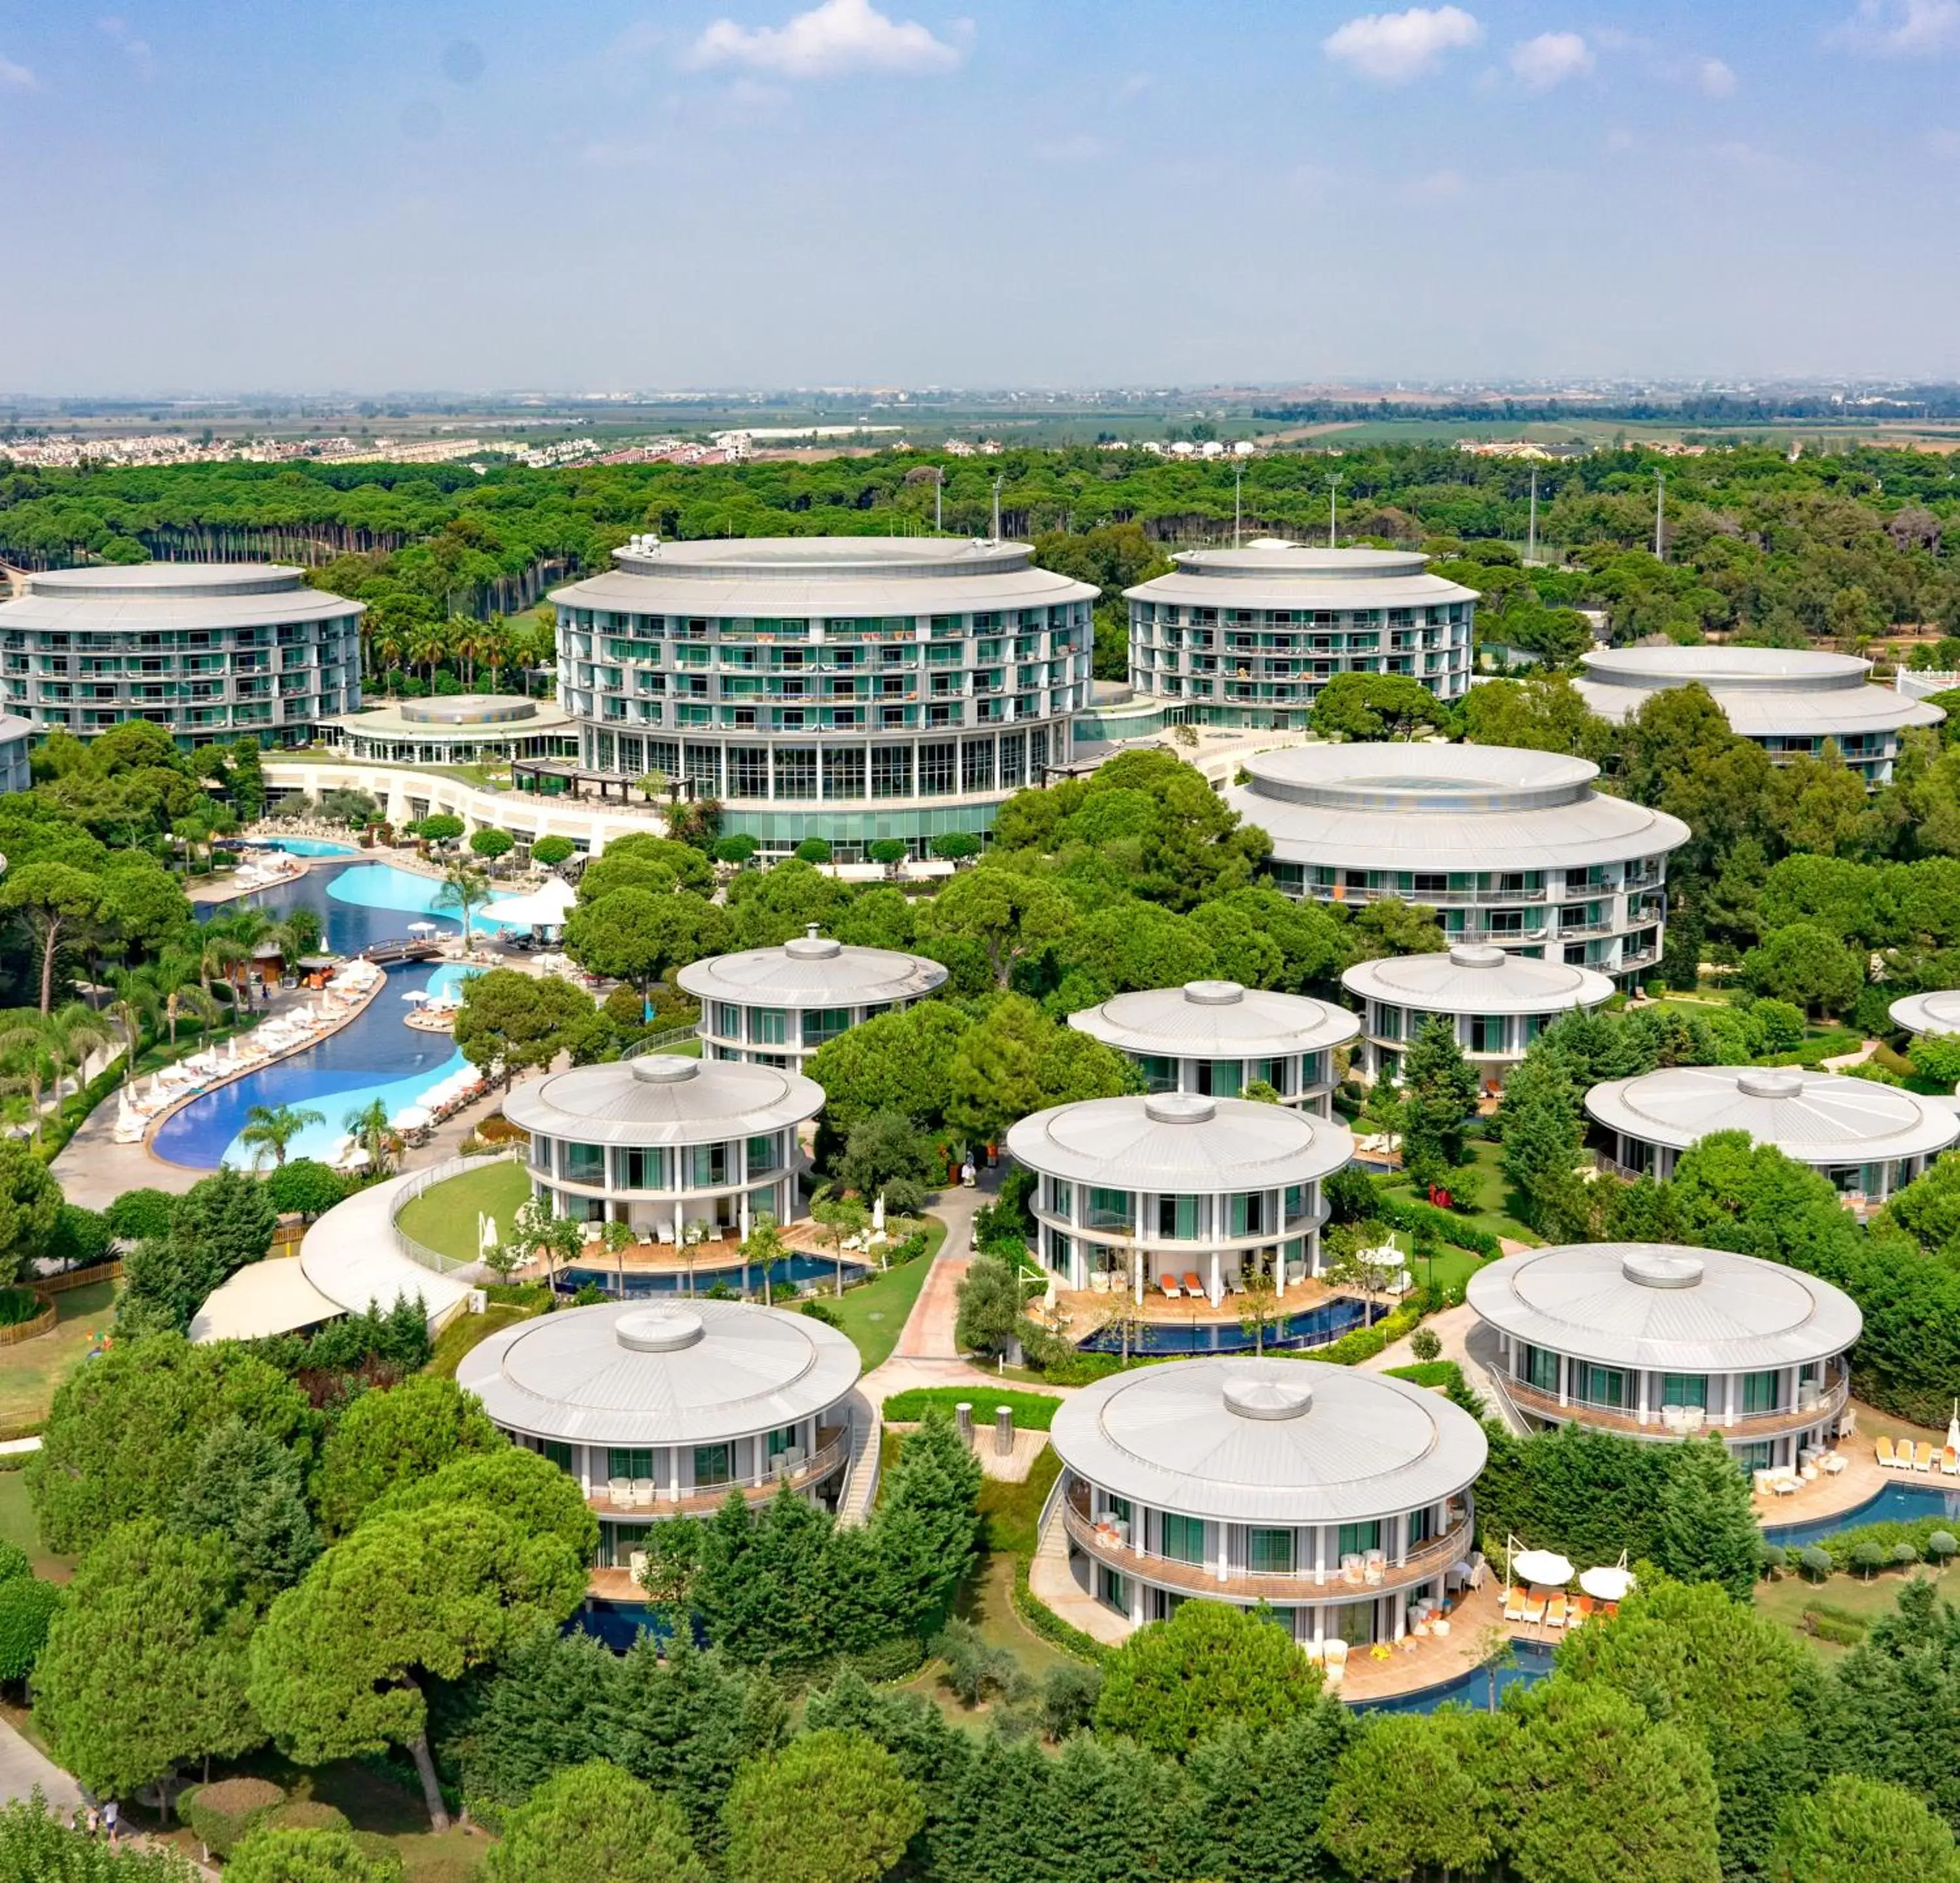 Property building, Bird's-eye View in Calista Luxury Resort